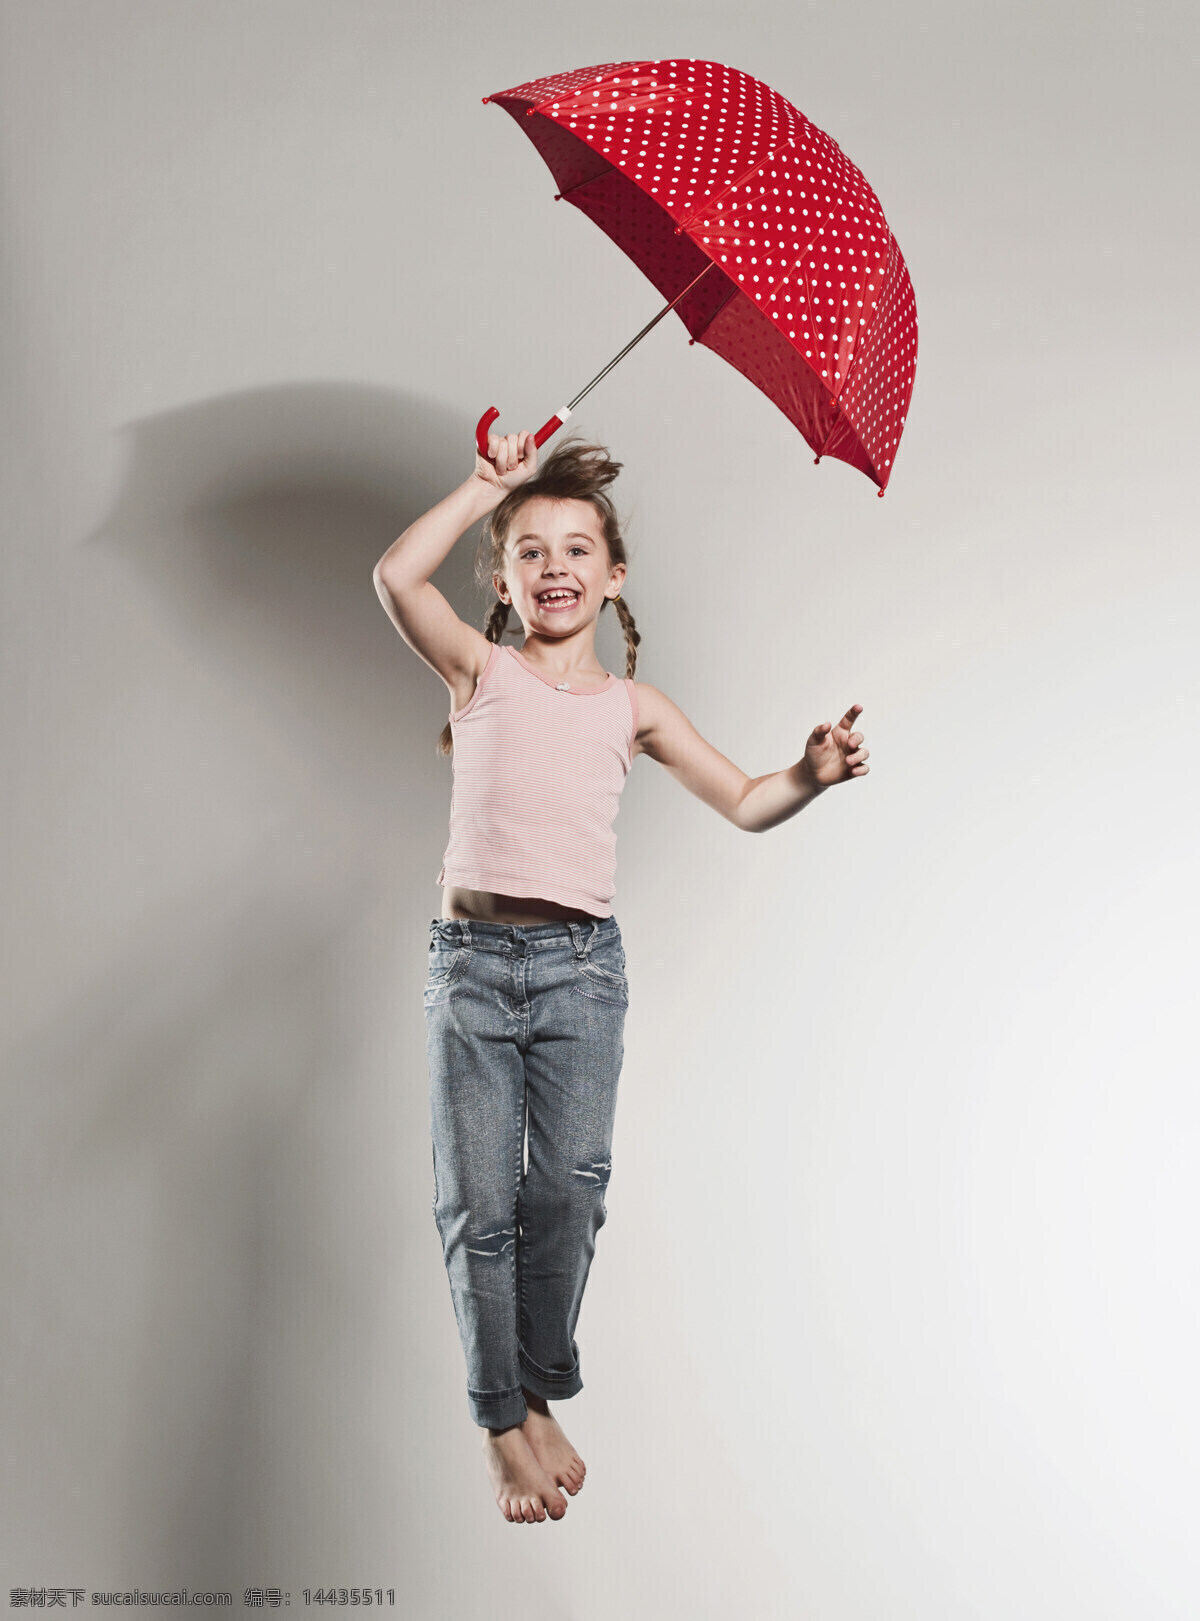 雨伞 跳跃 外国 小女孩 儿童 孩子 可爱 外国小女孩 辫子 微笑 高兴 天真活泼 腾空 摄影图 高清图片 儿童图片 人物图片